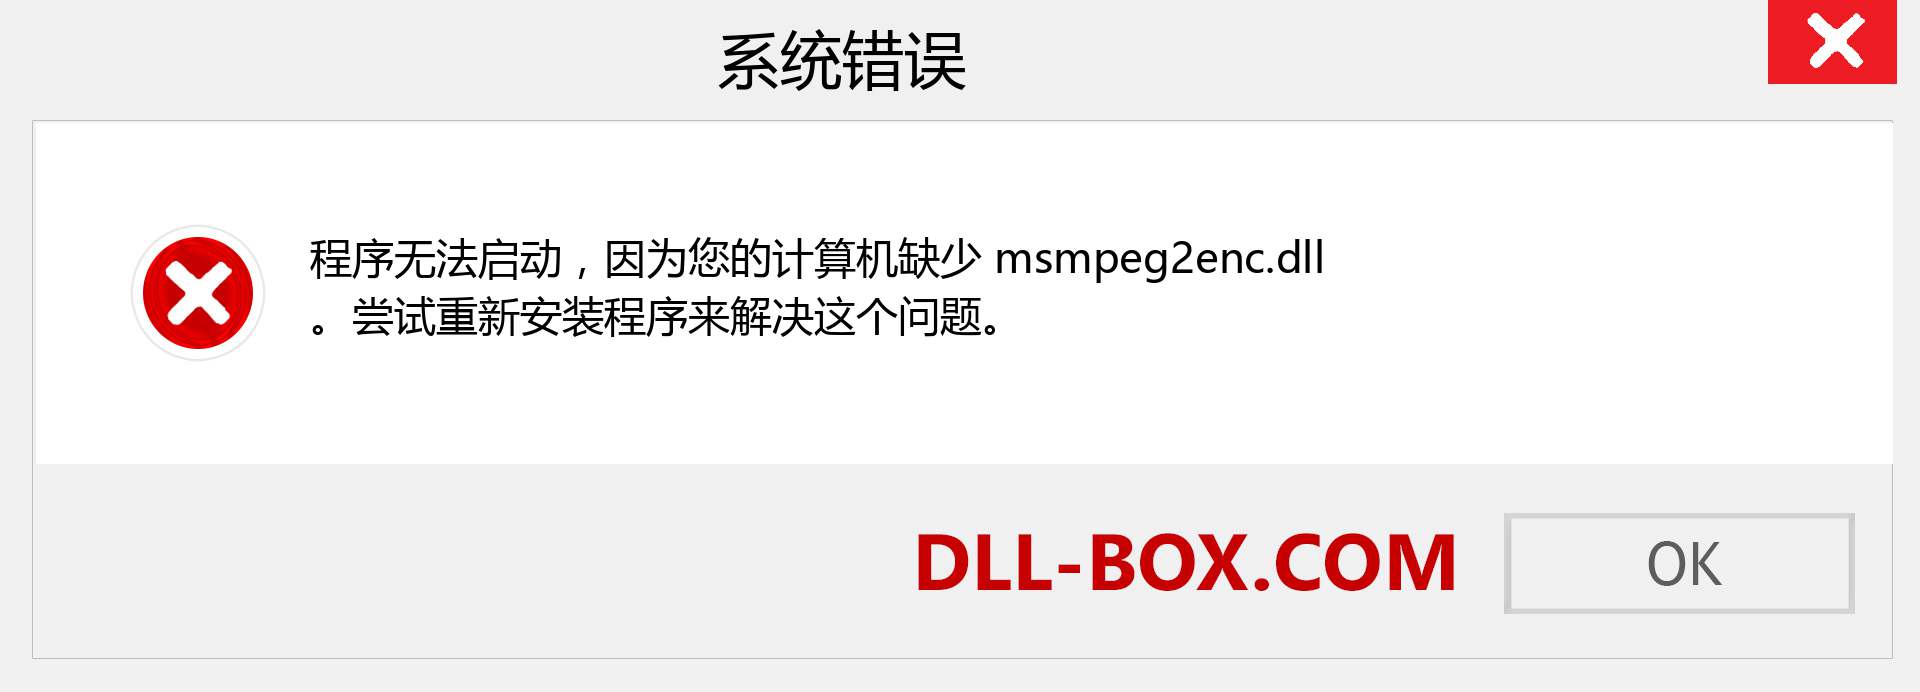 msmpeg2enc.dll 文件丢失？。 适用于 Windows 7、8、10 的下载 - 修复 Windows、照片、图像上的 msmpeg2enc dll 丢失错误